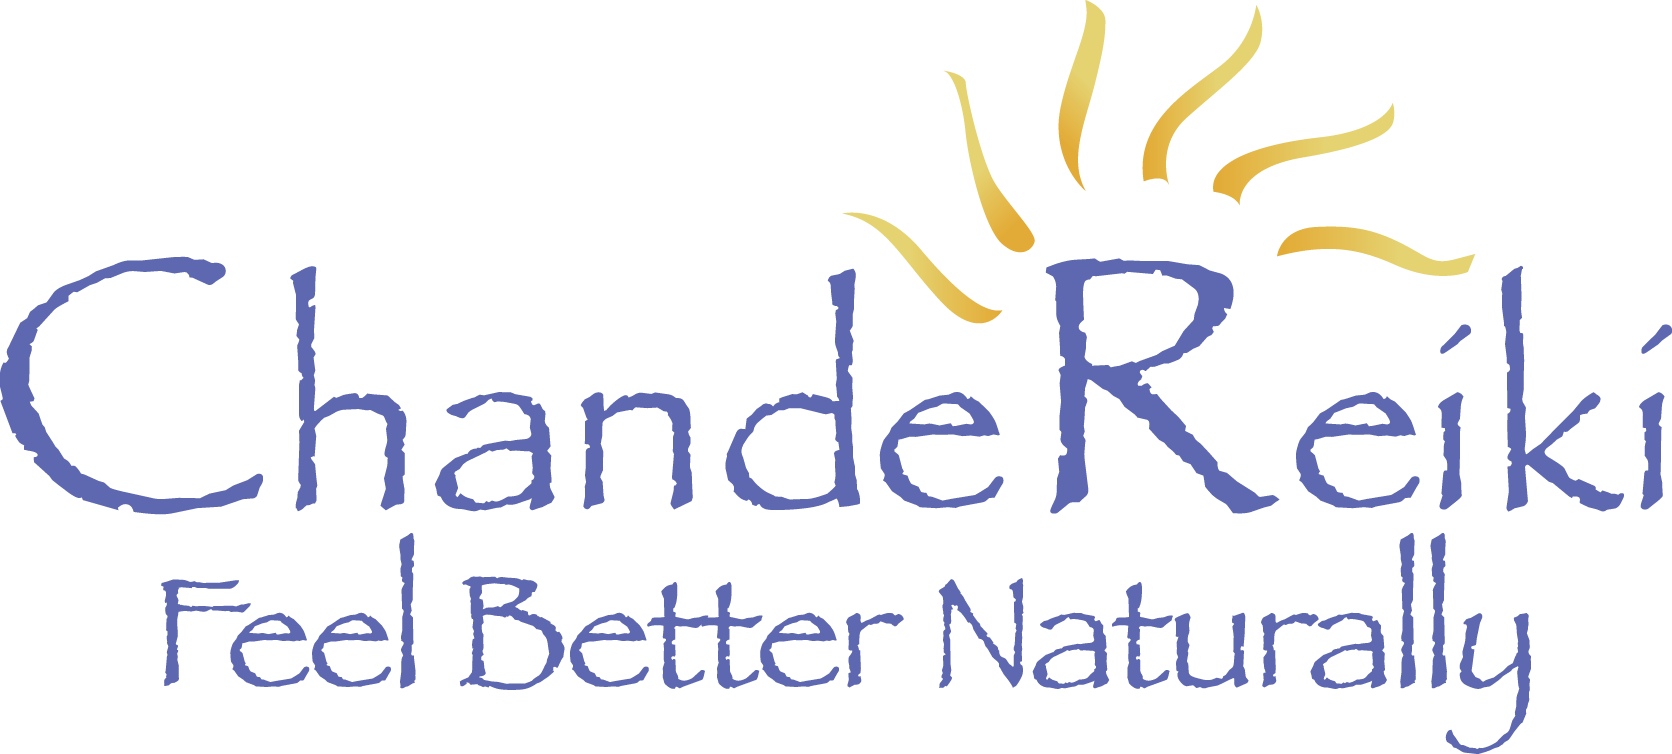 ChandeReiki - Reiki Healing & Intuitive Spiritual Coaching  logo